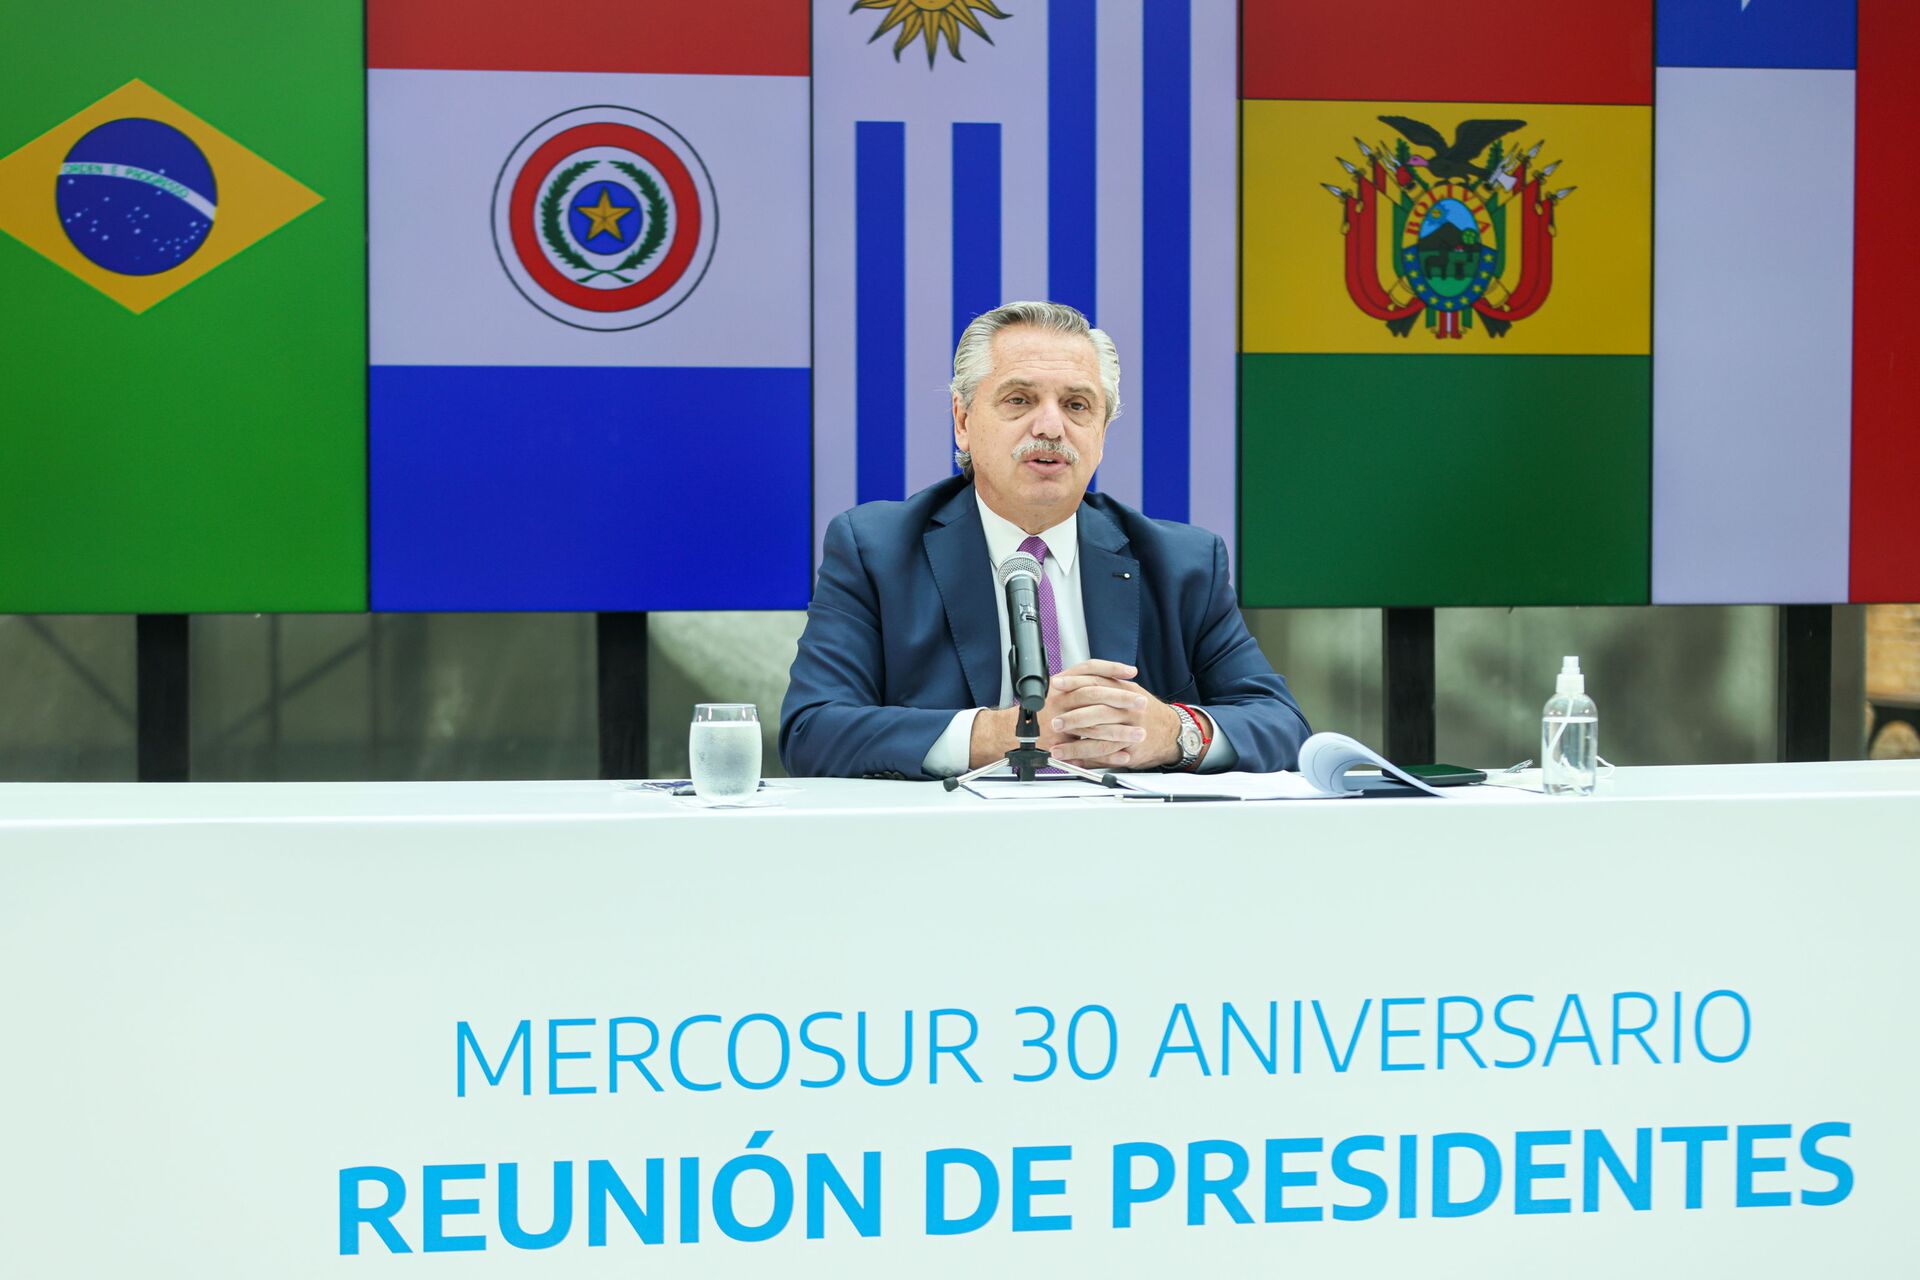 Uruguai propõe formalmente que se discuta a flexibilização do Mercosul - Sputnik Brasil, 1920, 26.03.2021